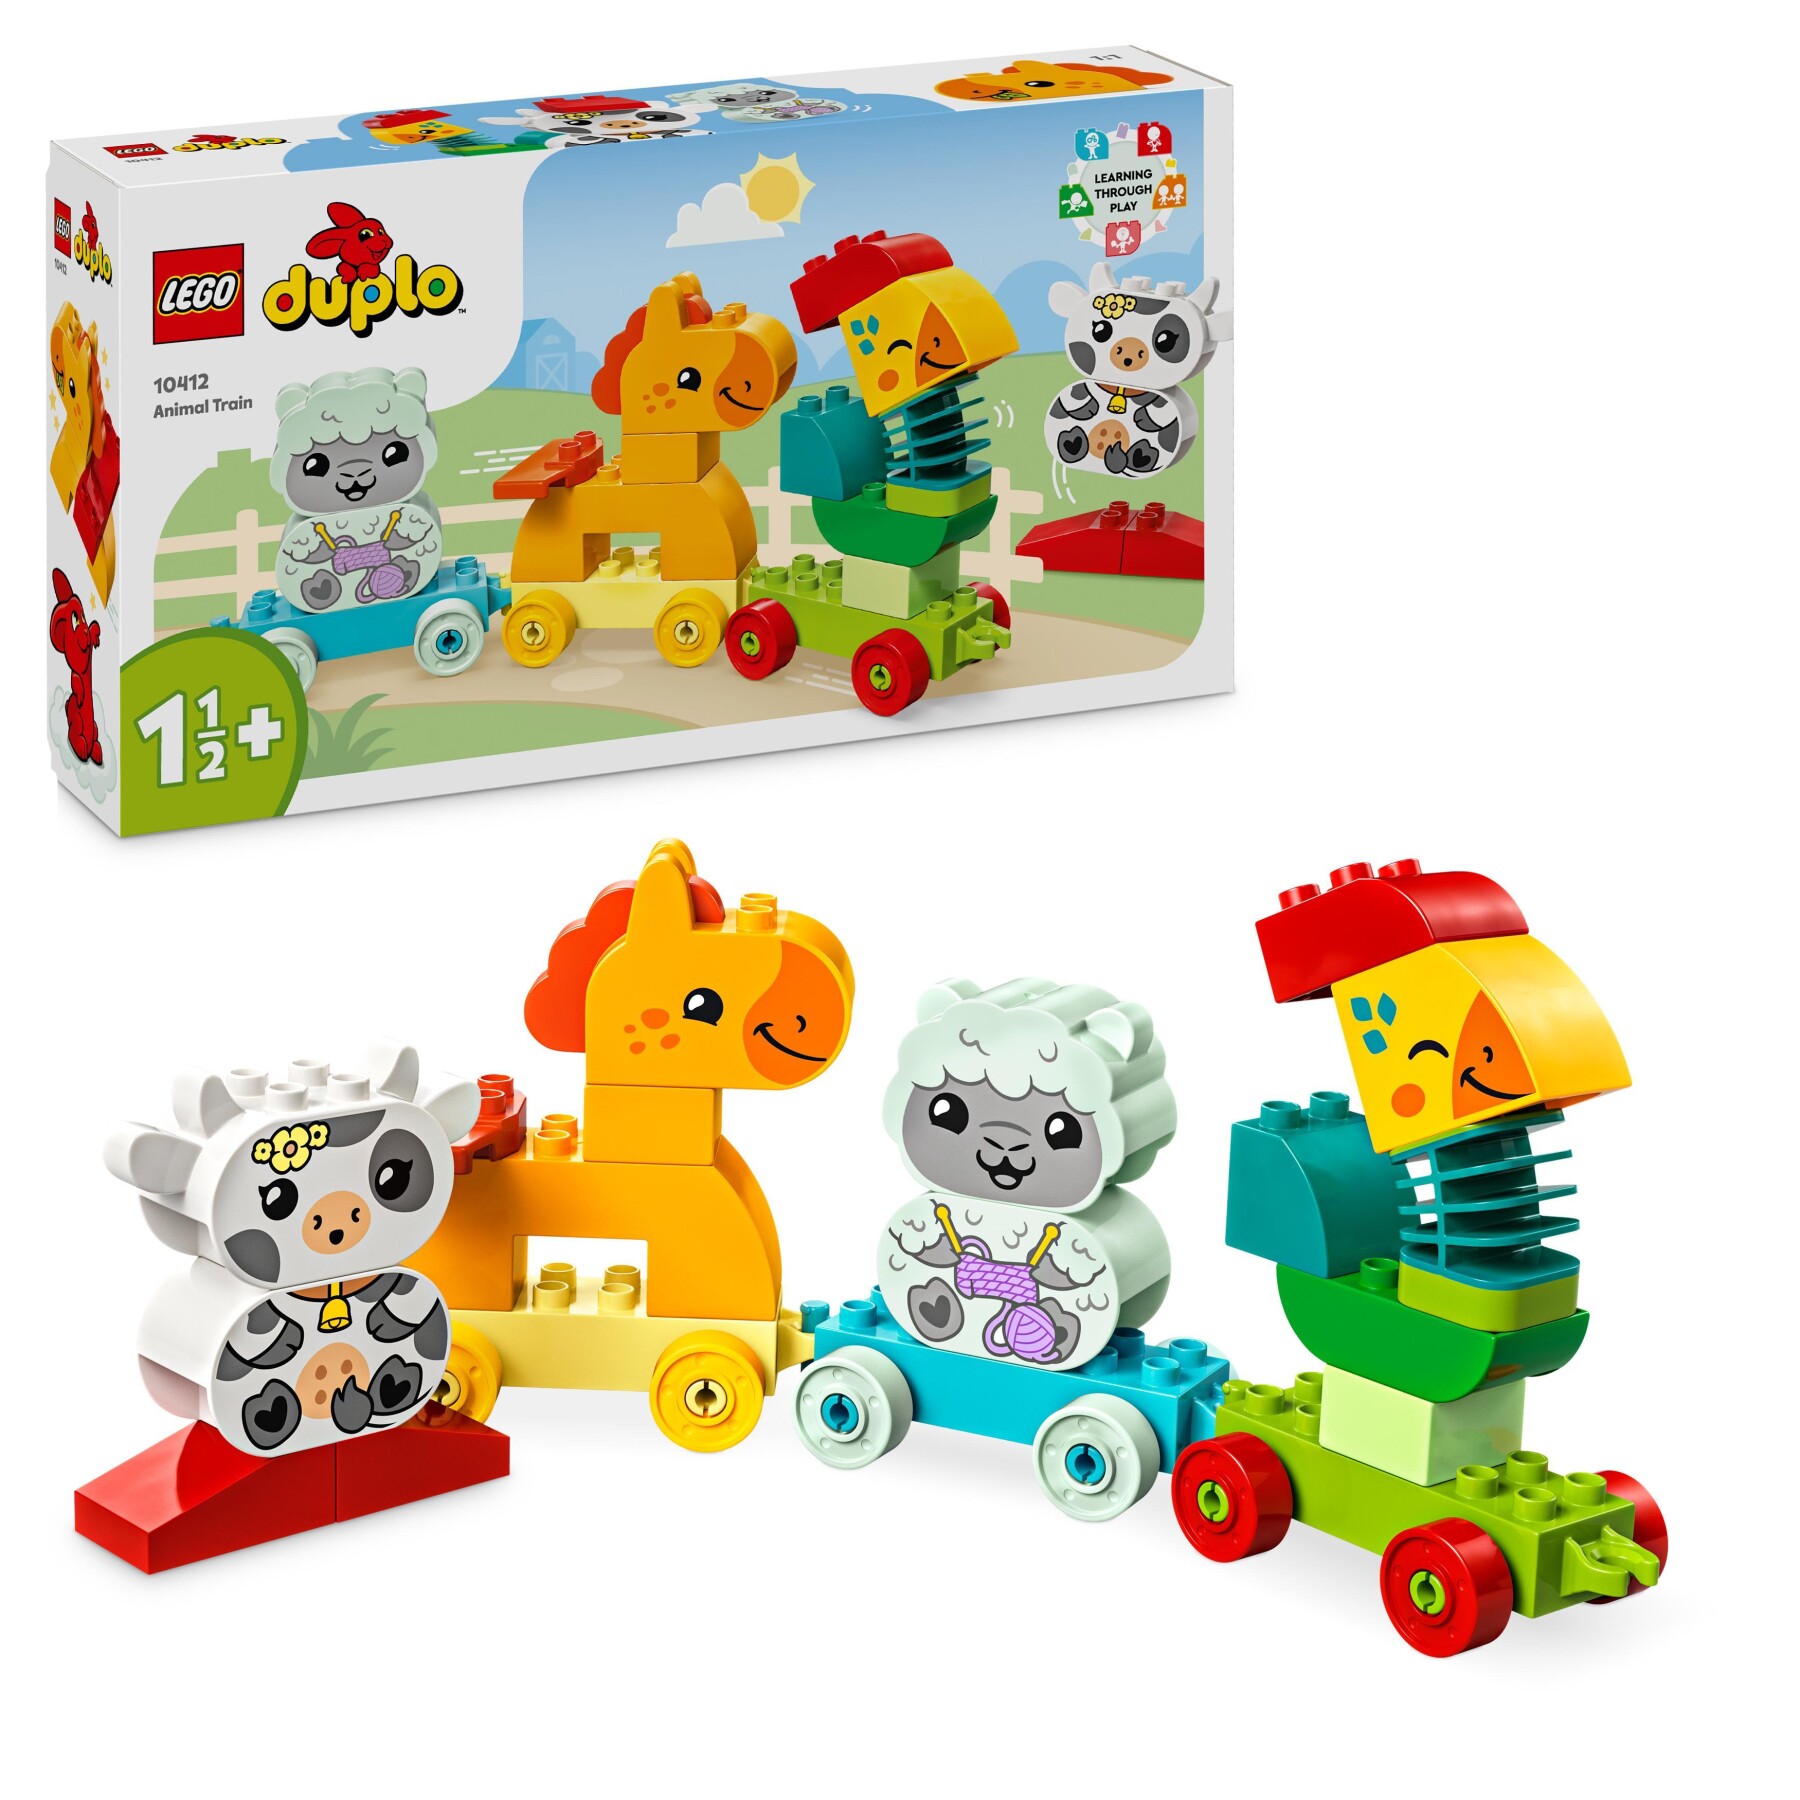 Lego duplo 10412 il treno degli animali, giochi per bambini da 1.5 anni, giocattolo educativo per l'apprendimento didattico - LEGO DUPLO